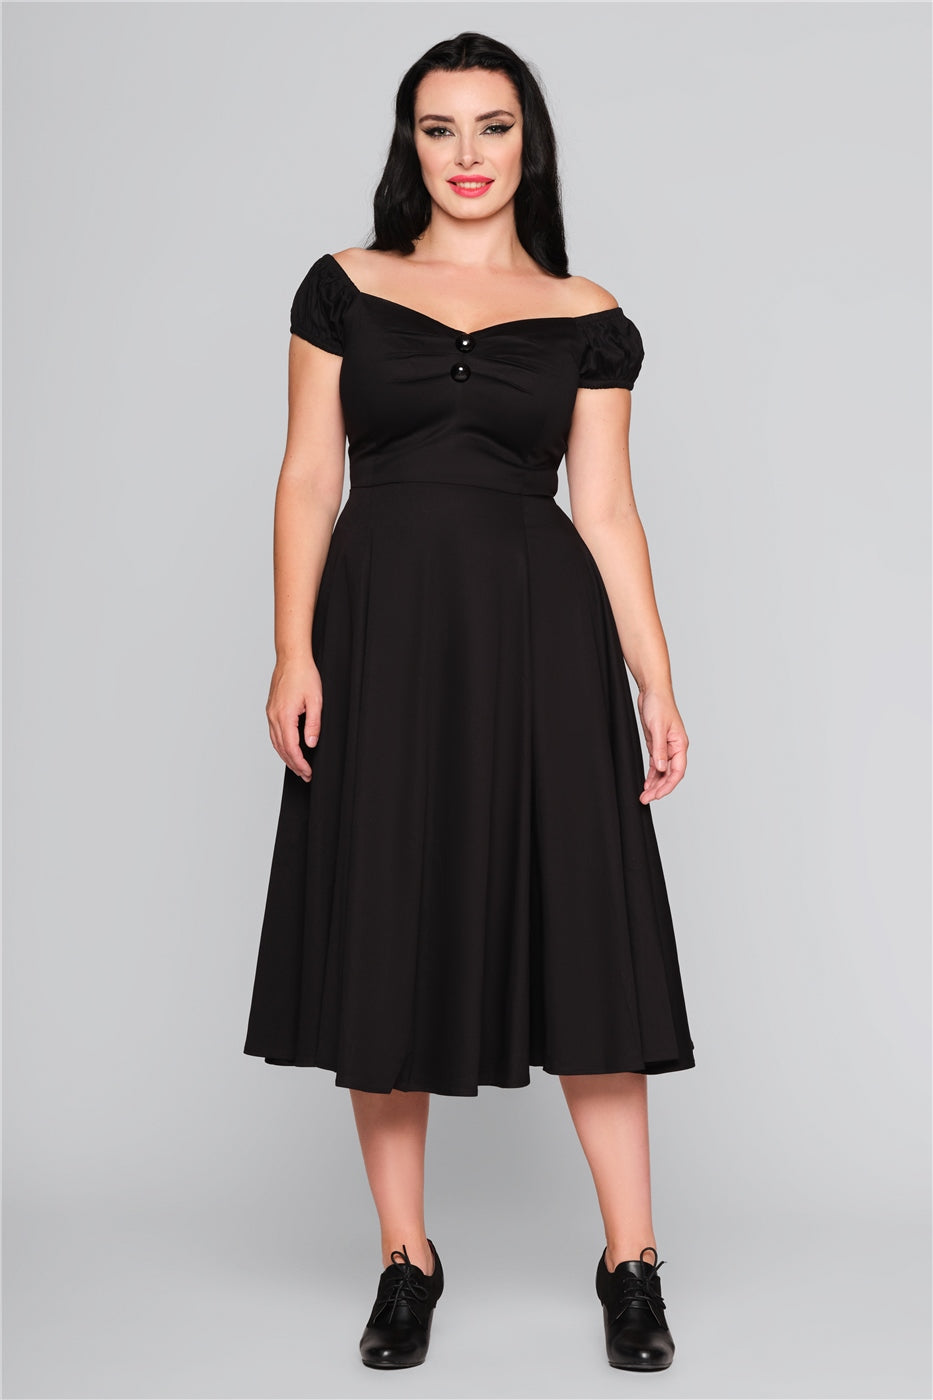 Dolores Classic Kleid in schwarz